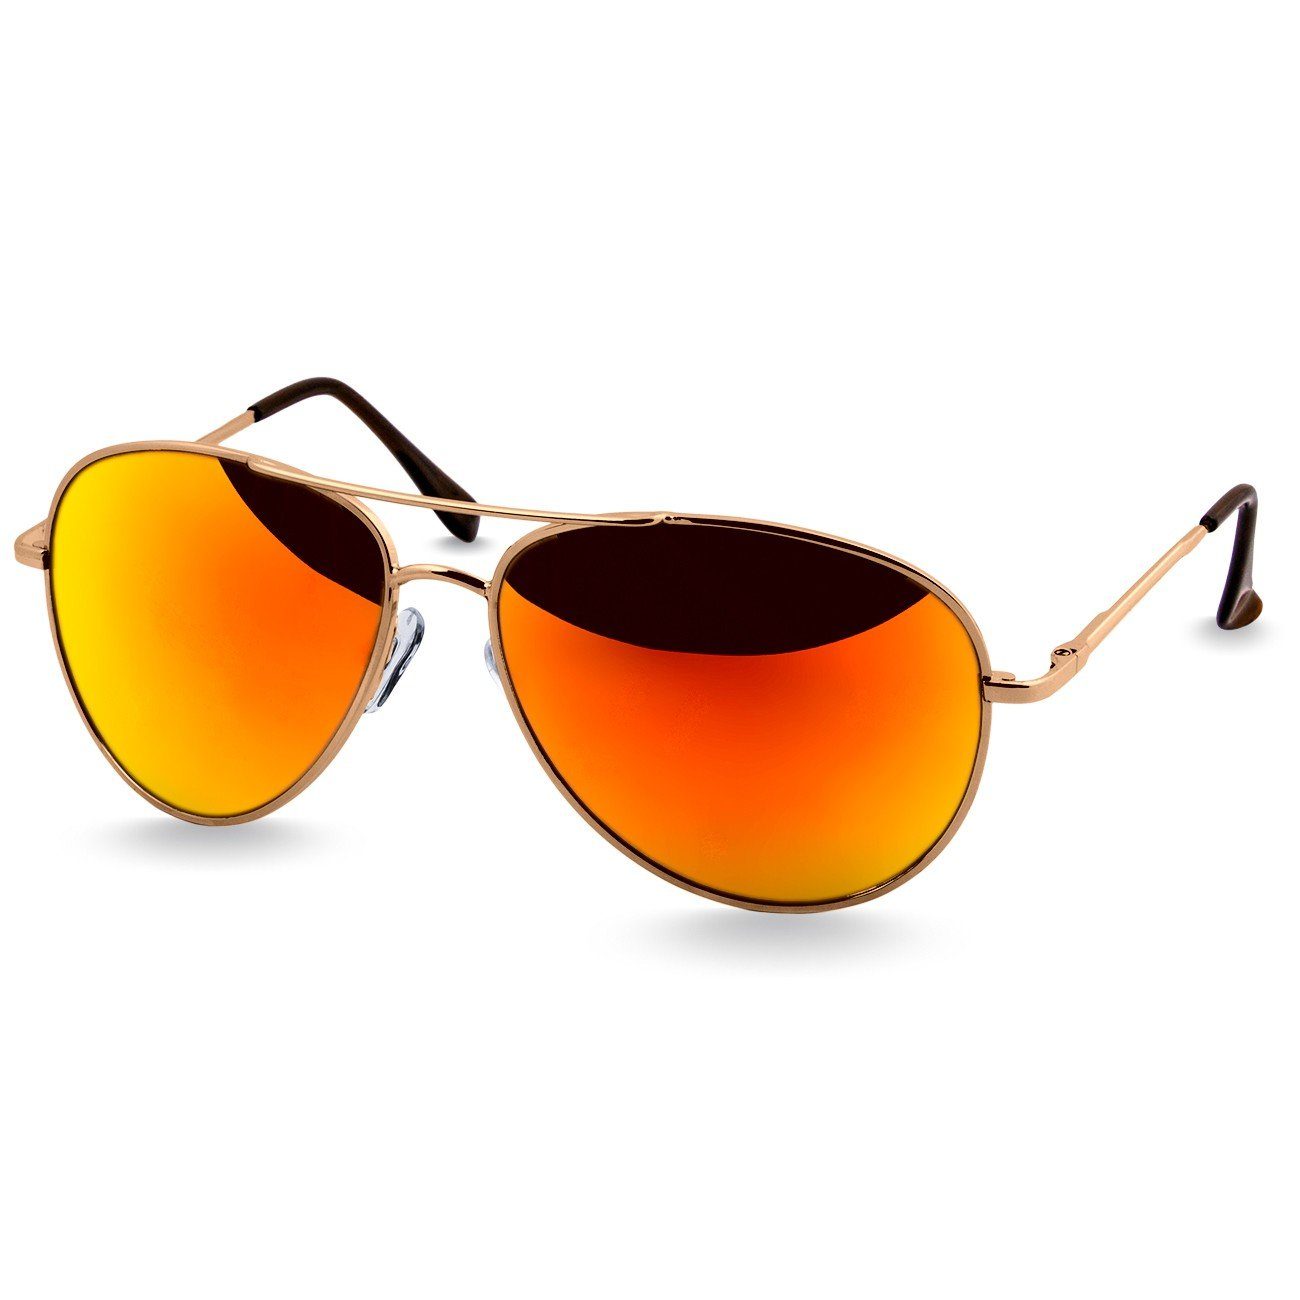 Pilotenbrille klassische Sonnenbrille / Caspar gold Unisex verspiegelt Retro silber SG013 grün